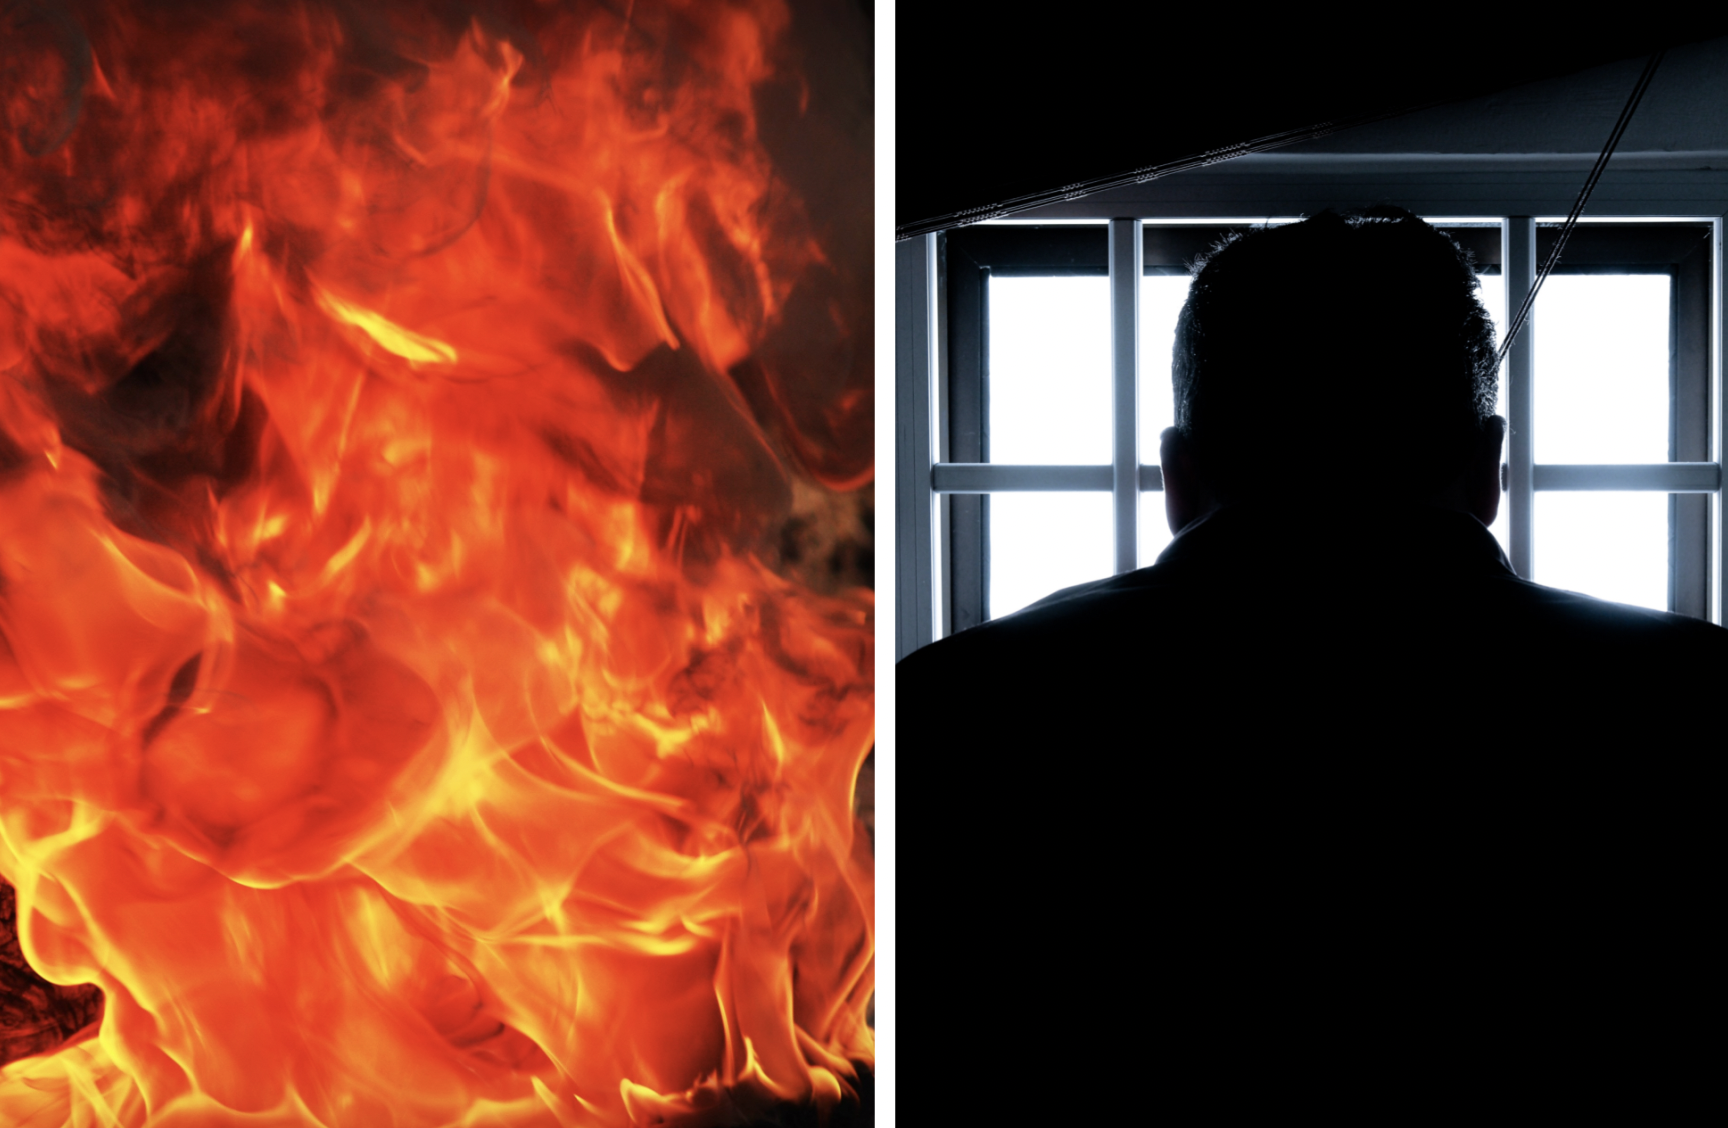 En pappa i 61-års åldern försökte tända eld på sin 31-åriga dotter då han blev avundsjuk på hennes nya killen